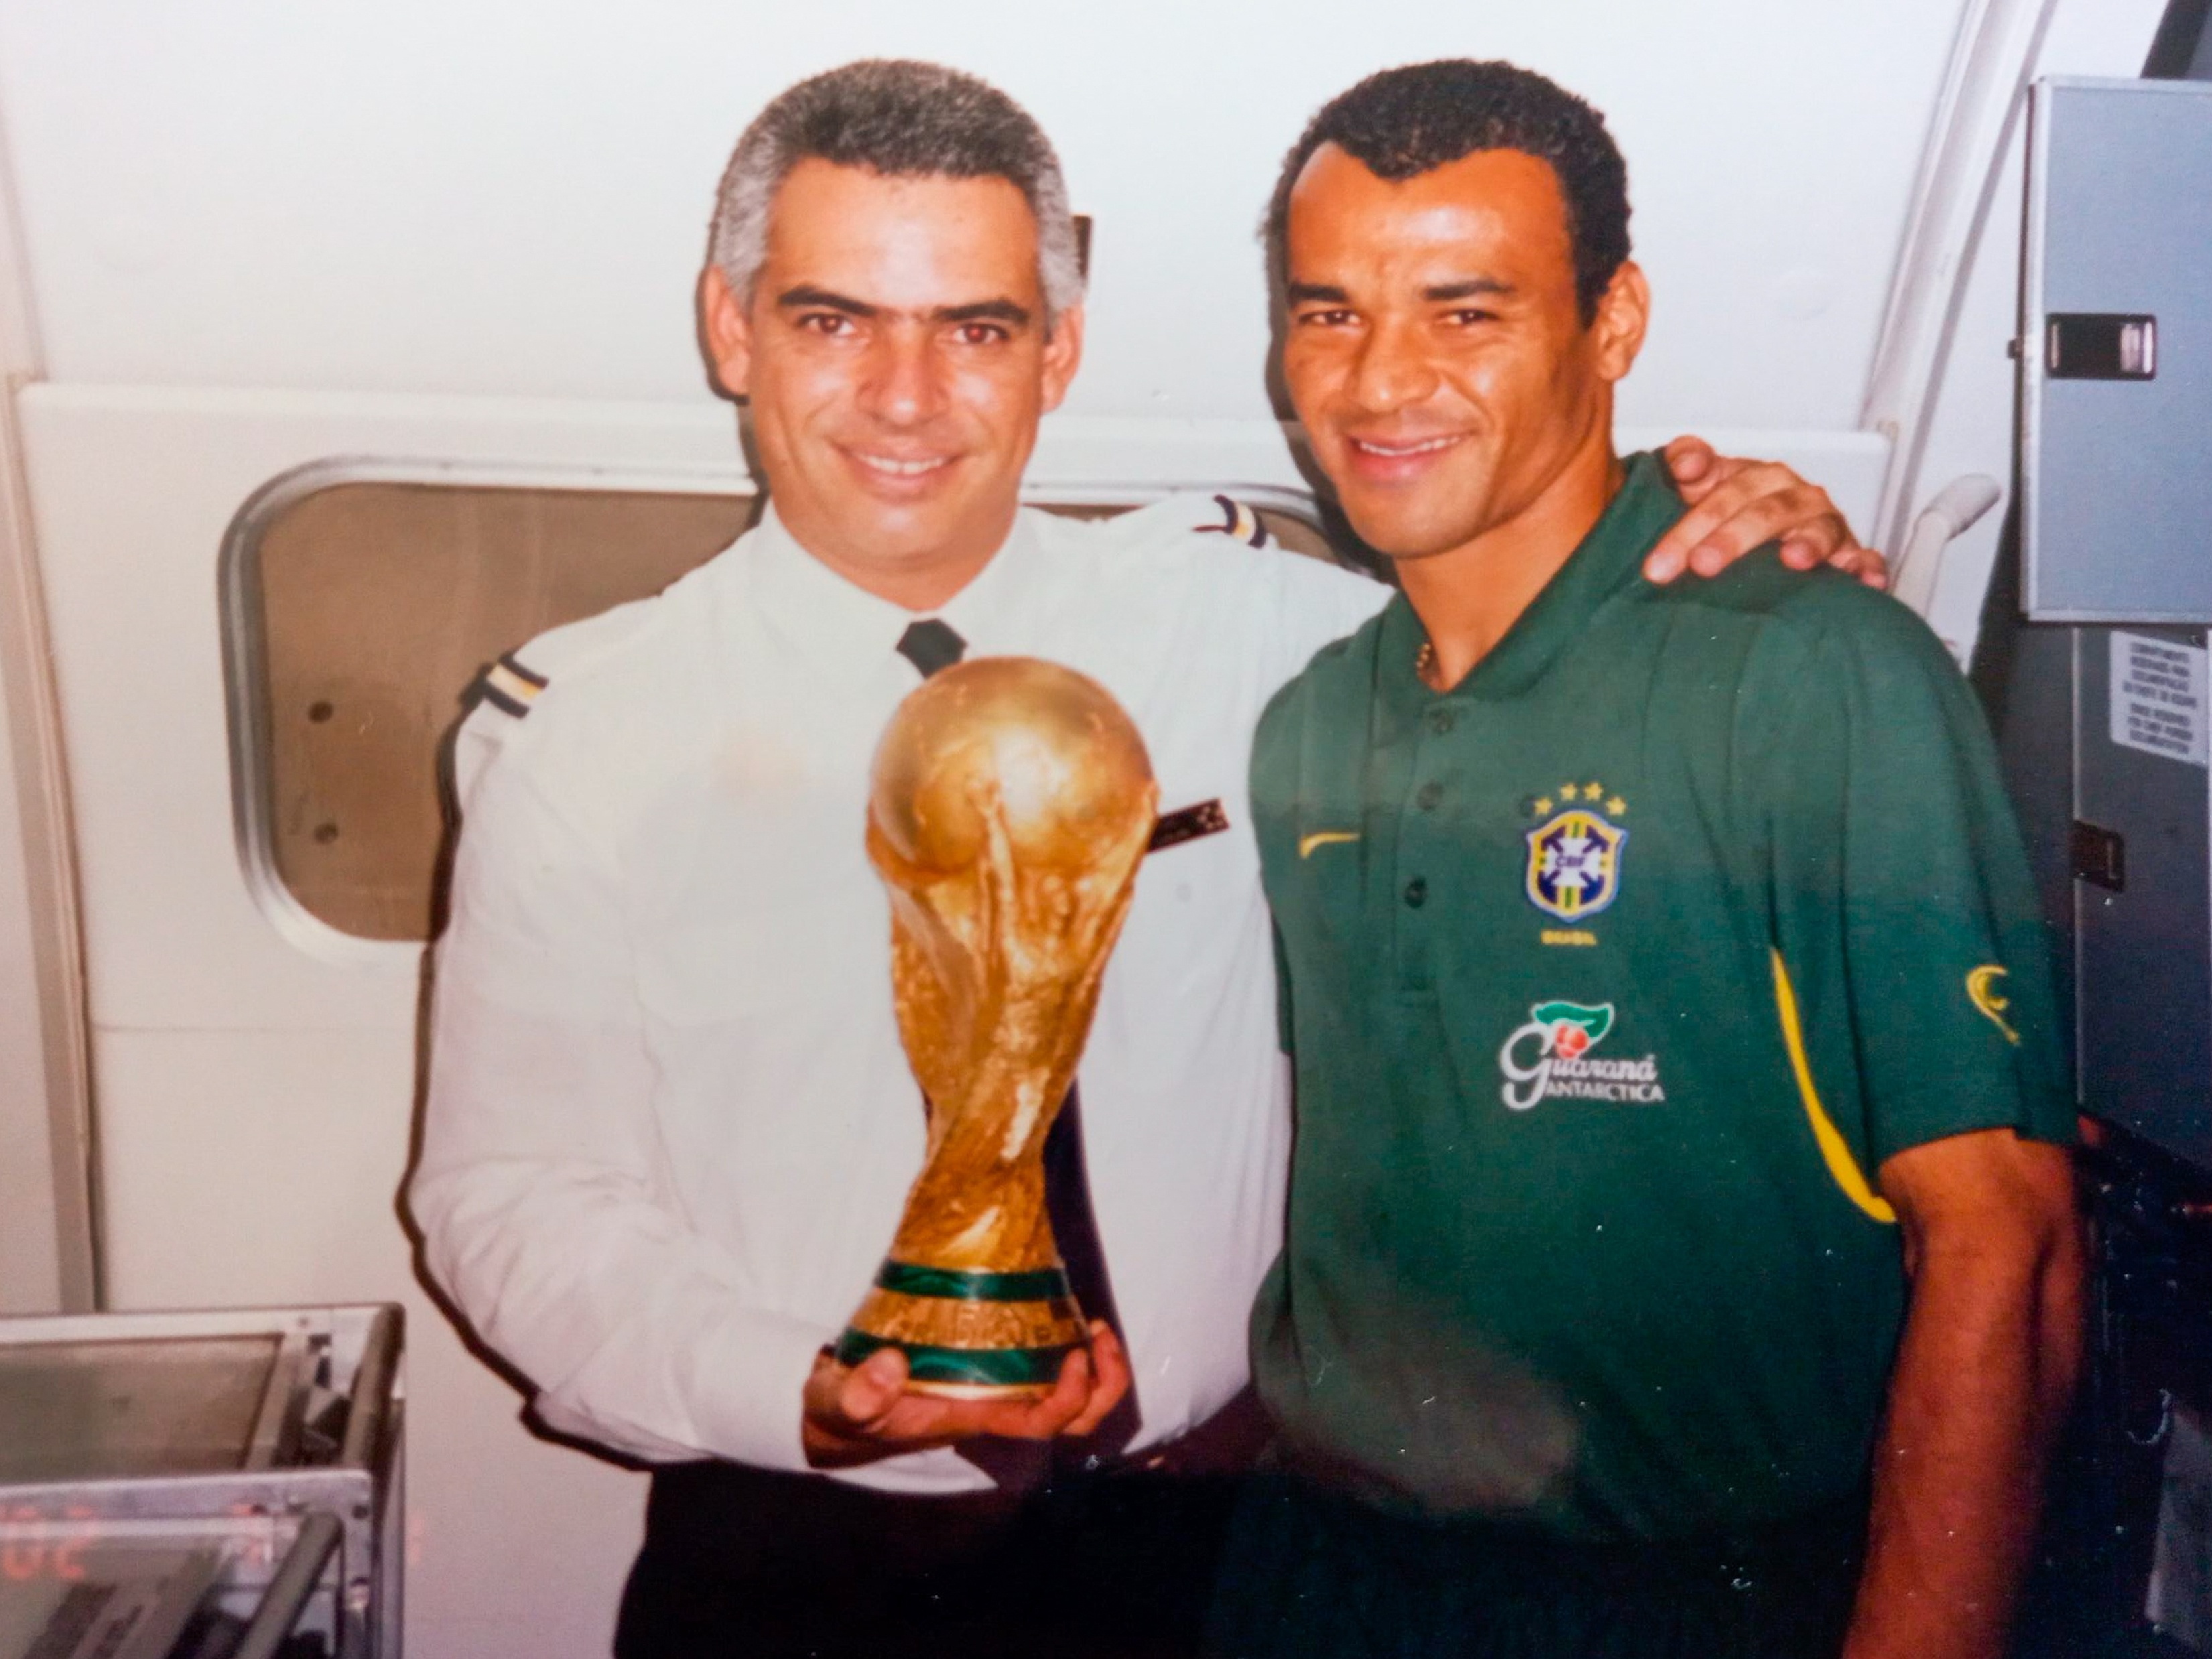 Copa do Mundo de 2002 - A Dica do Dia, Descubra o Brasil - Rio & Learn